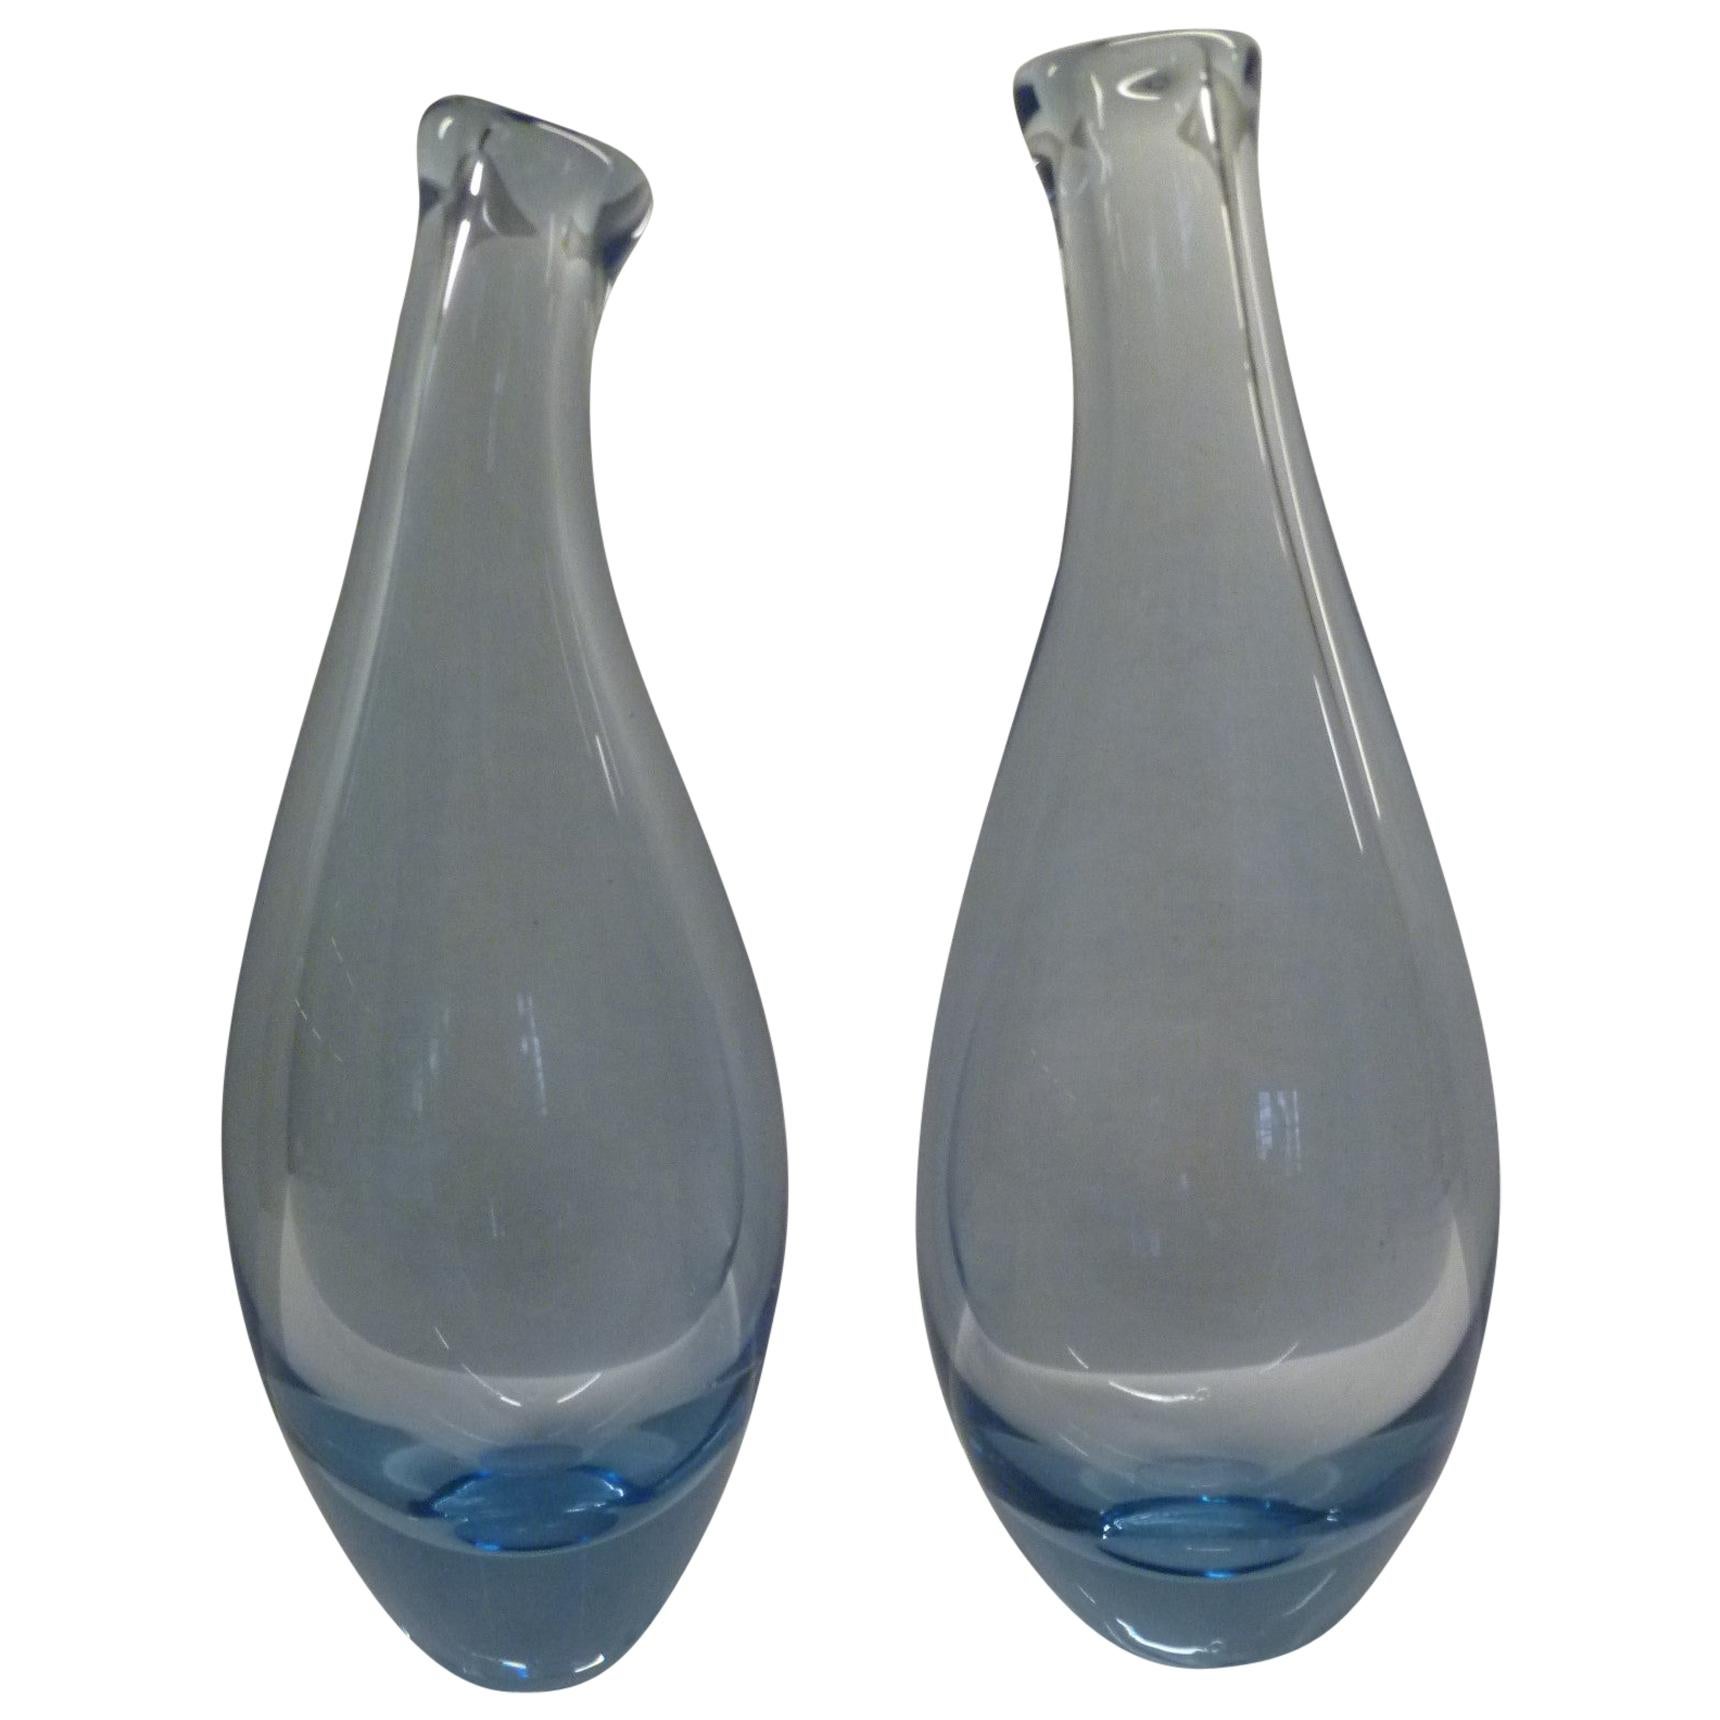 Per Lutken for Holmegaard Vases and Vessels - 21 For Sale at 